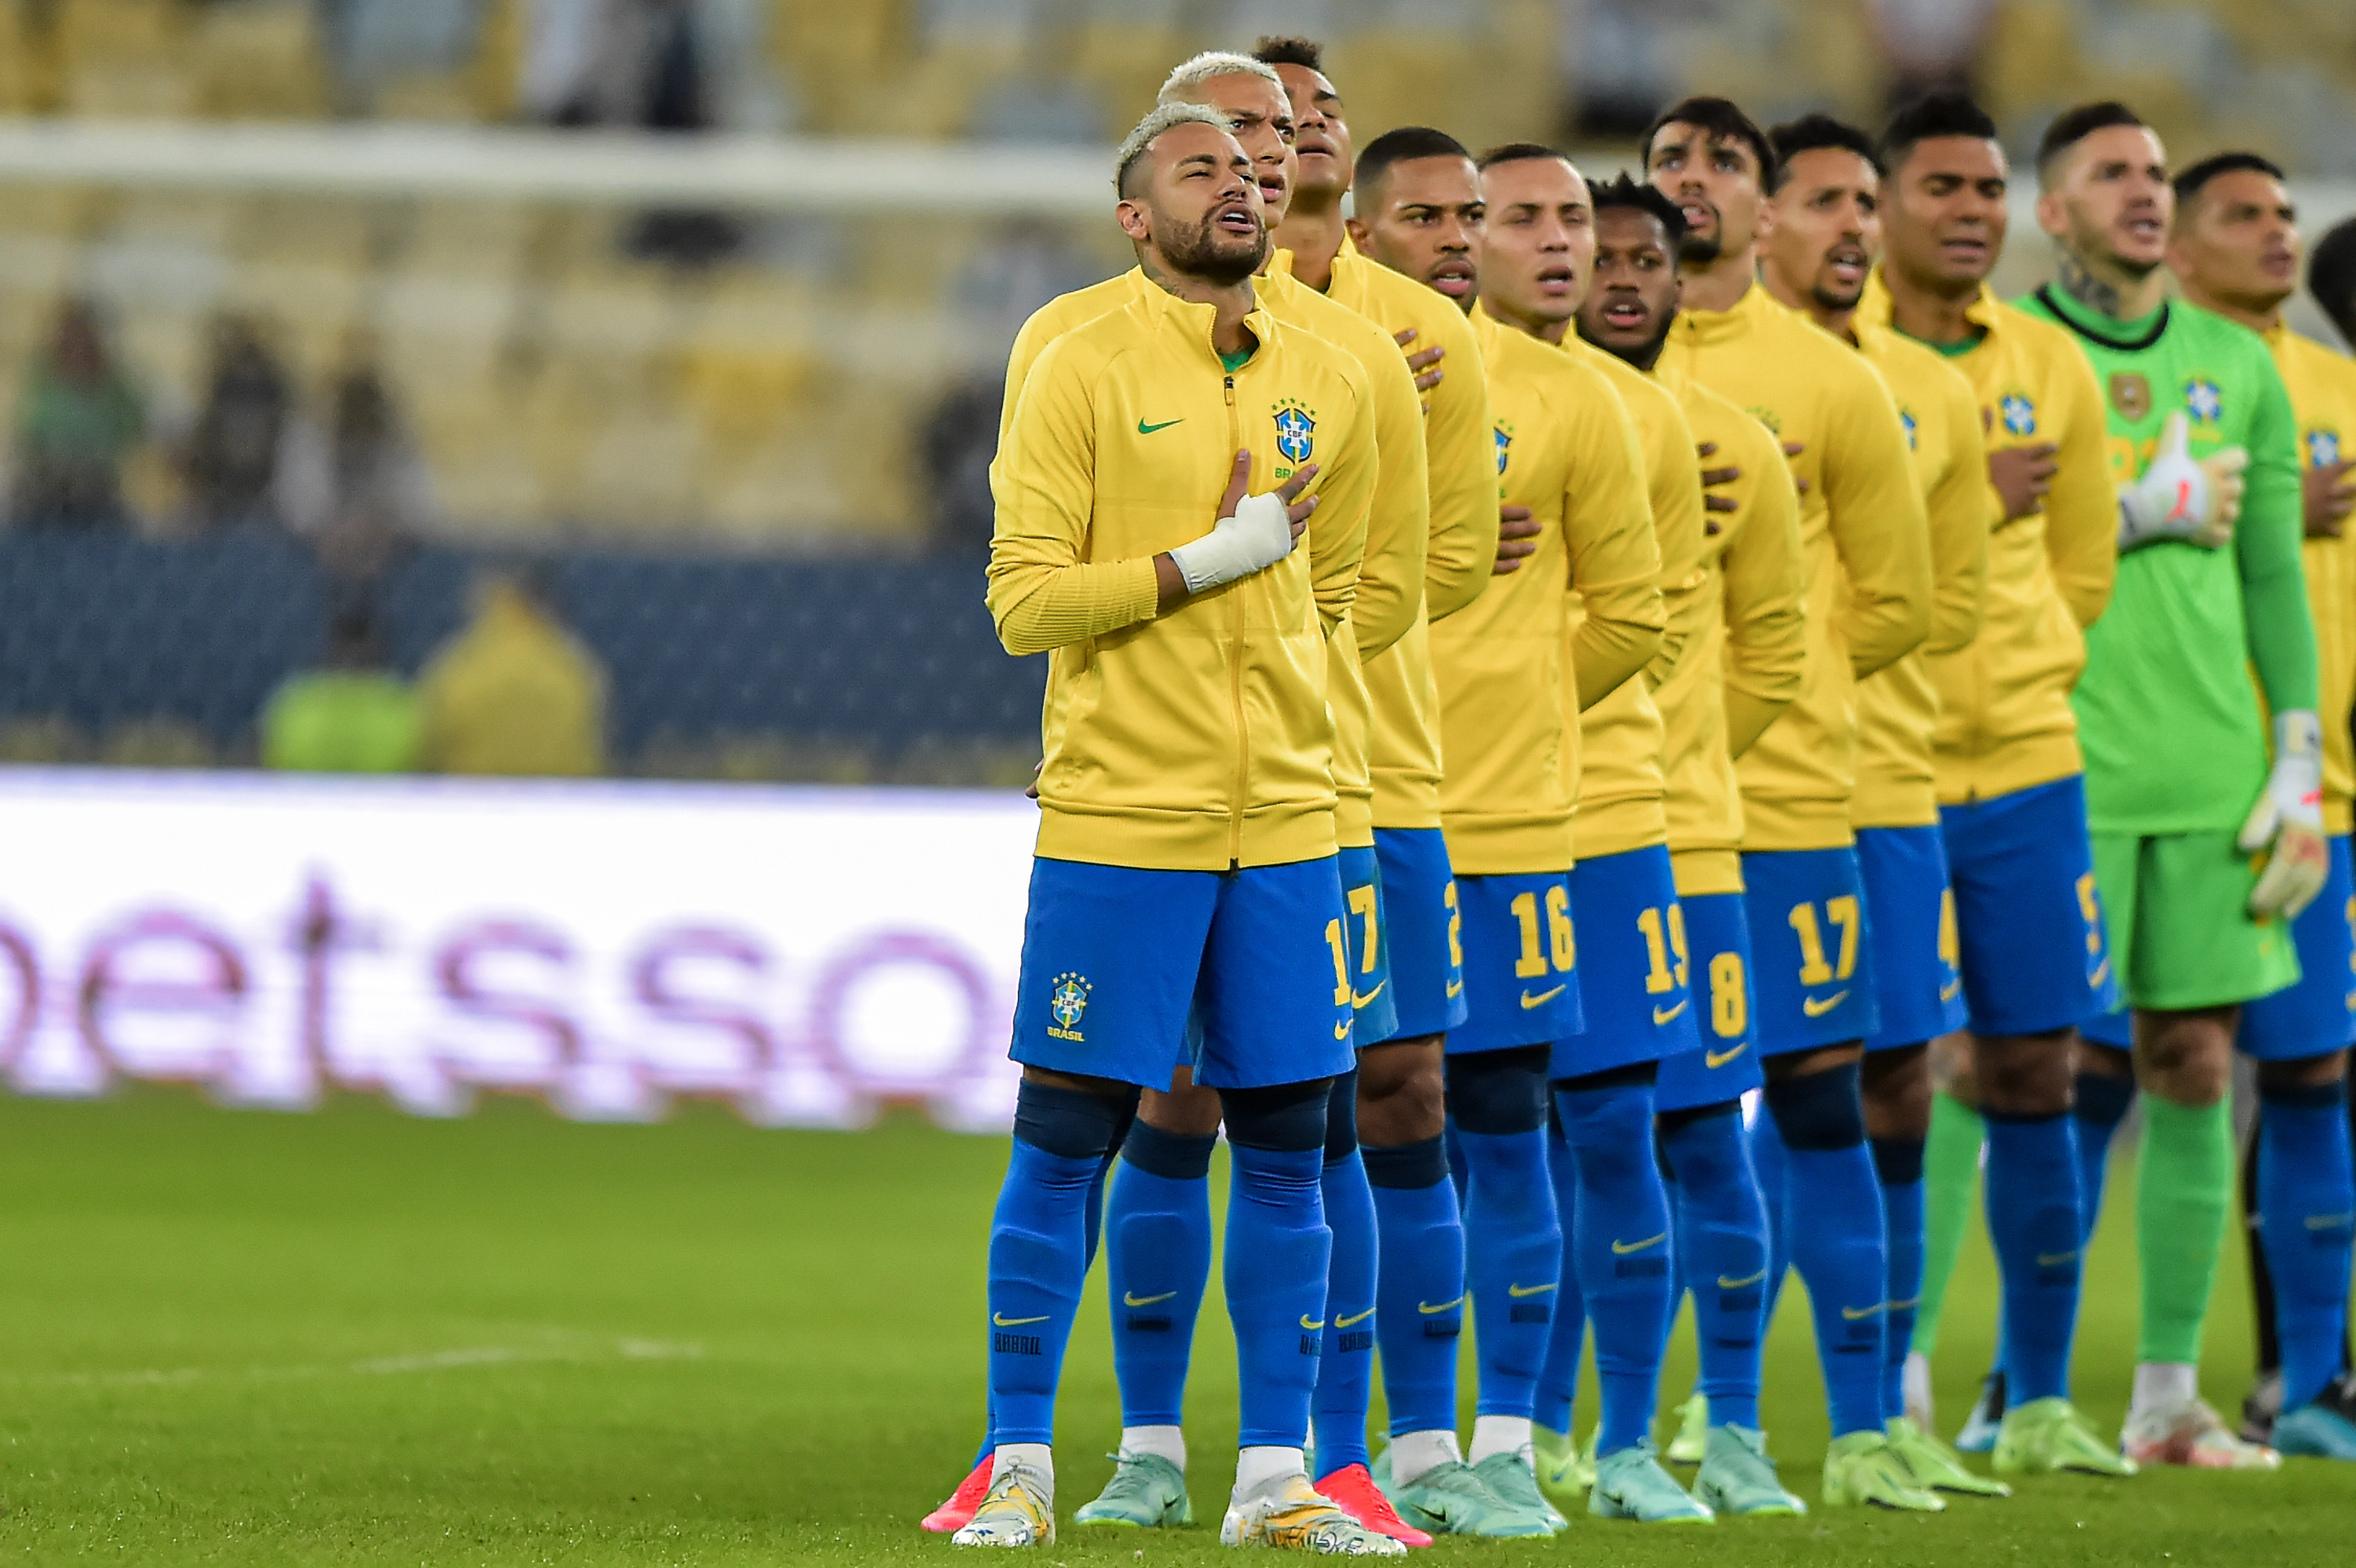 Seleção brasileira na disputa da final da Copa América em 2021